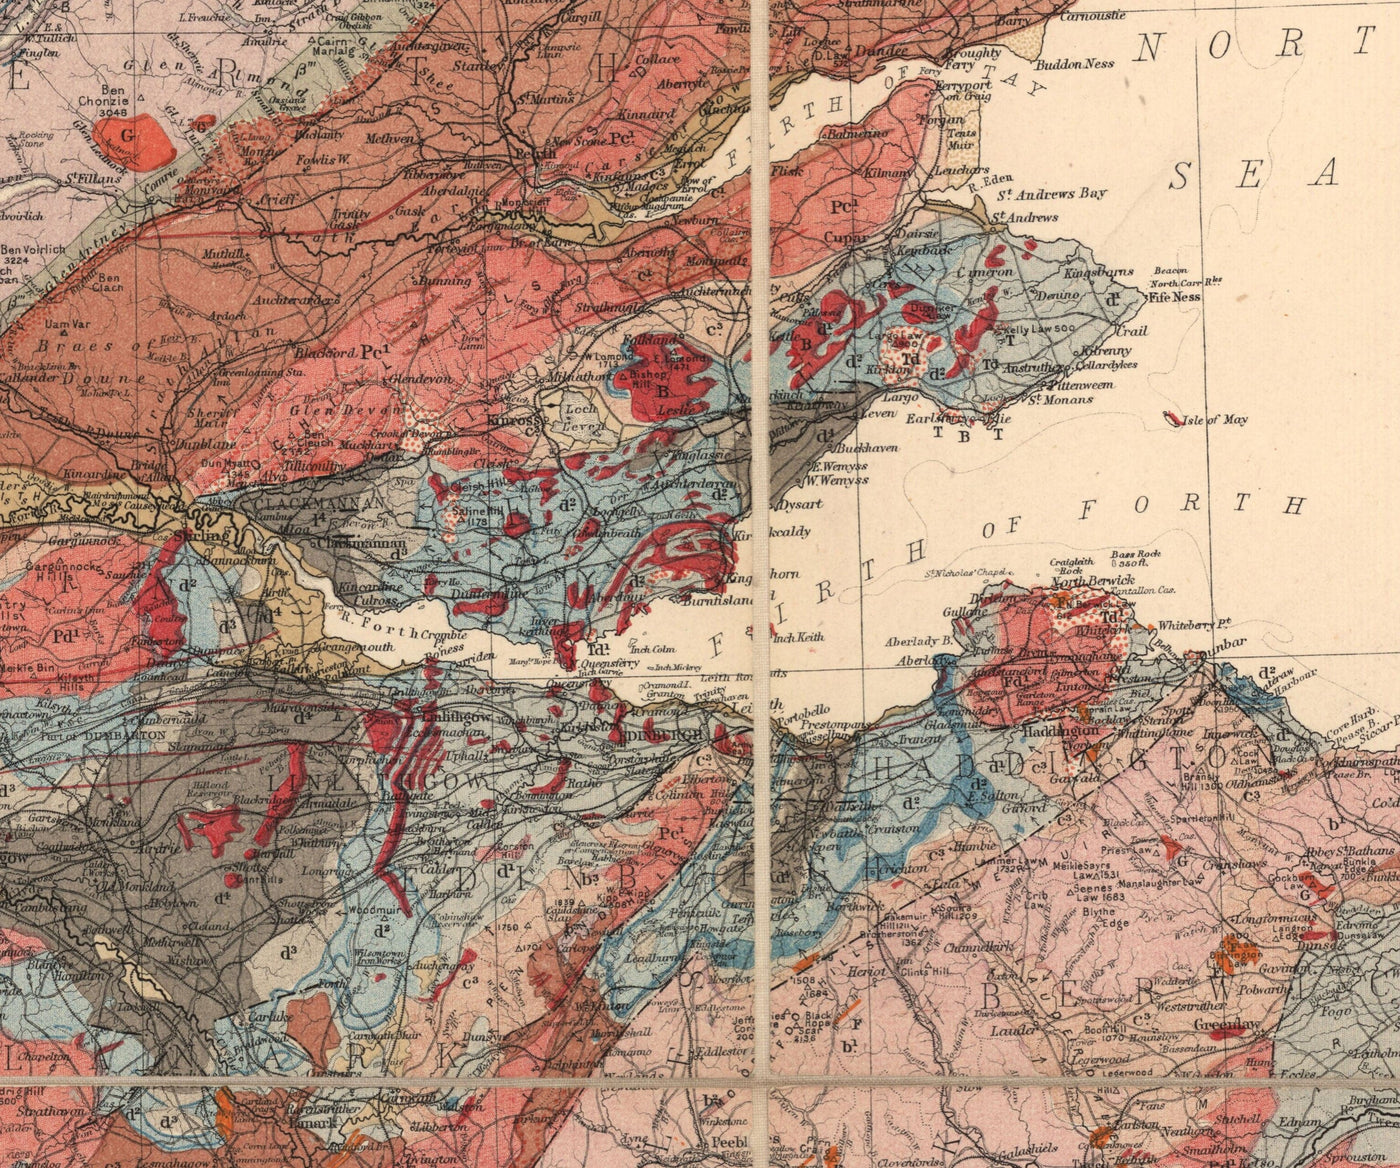 Ecosse Géologie Carte - Ancienne carte de l'Écosse par A. Geikie, 1876